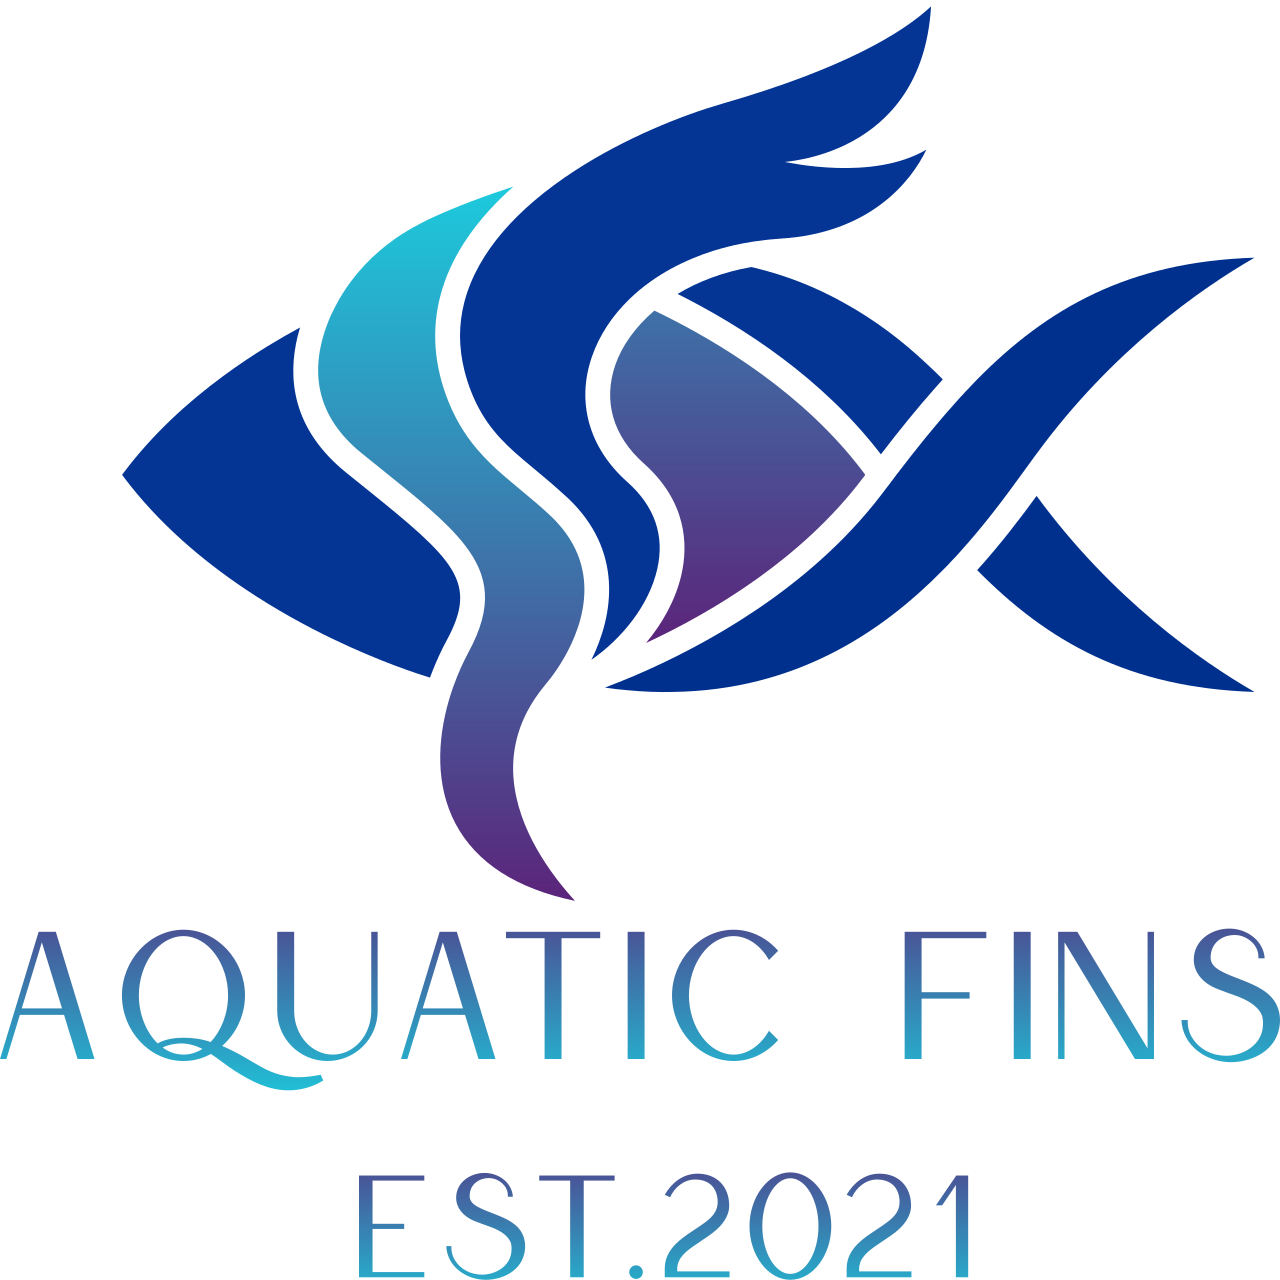 Aquatic fins 's web page